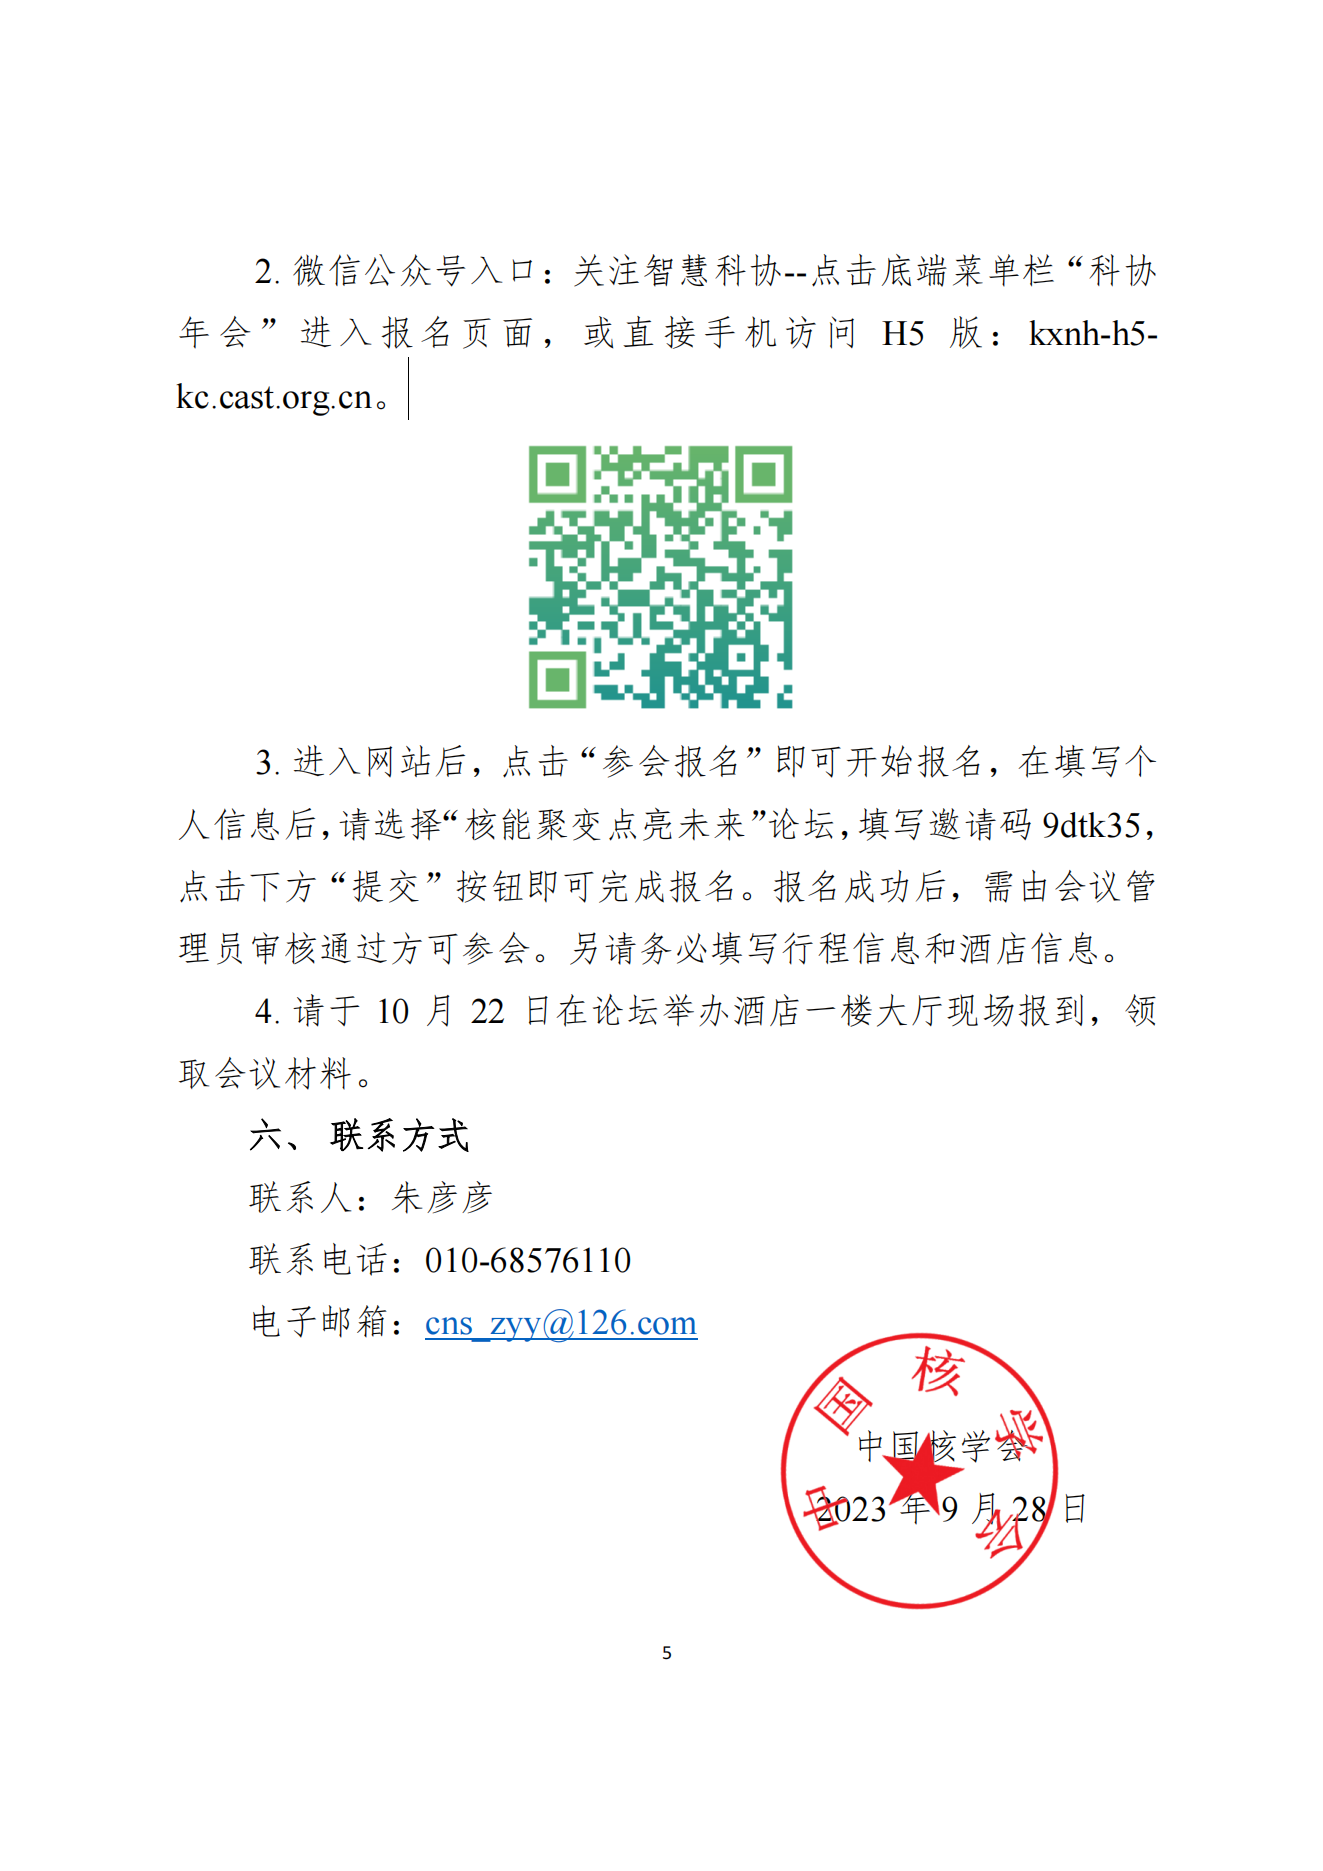 关于注册报名第二十五届中国科协年会“核能聚变点亮未来”论坛的通知(1)_04.png